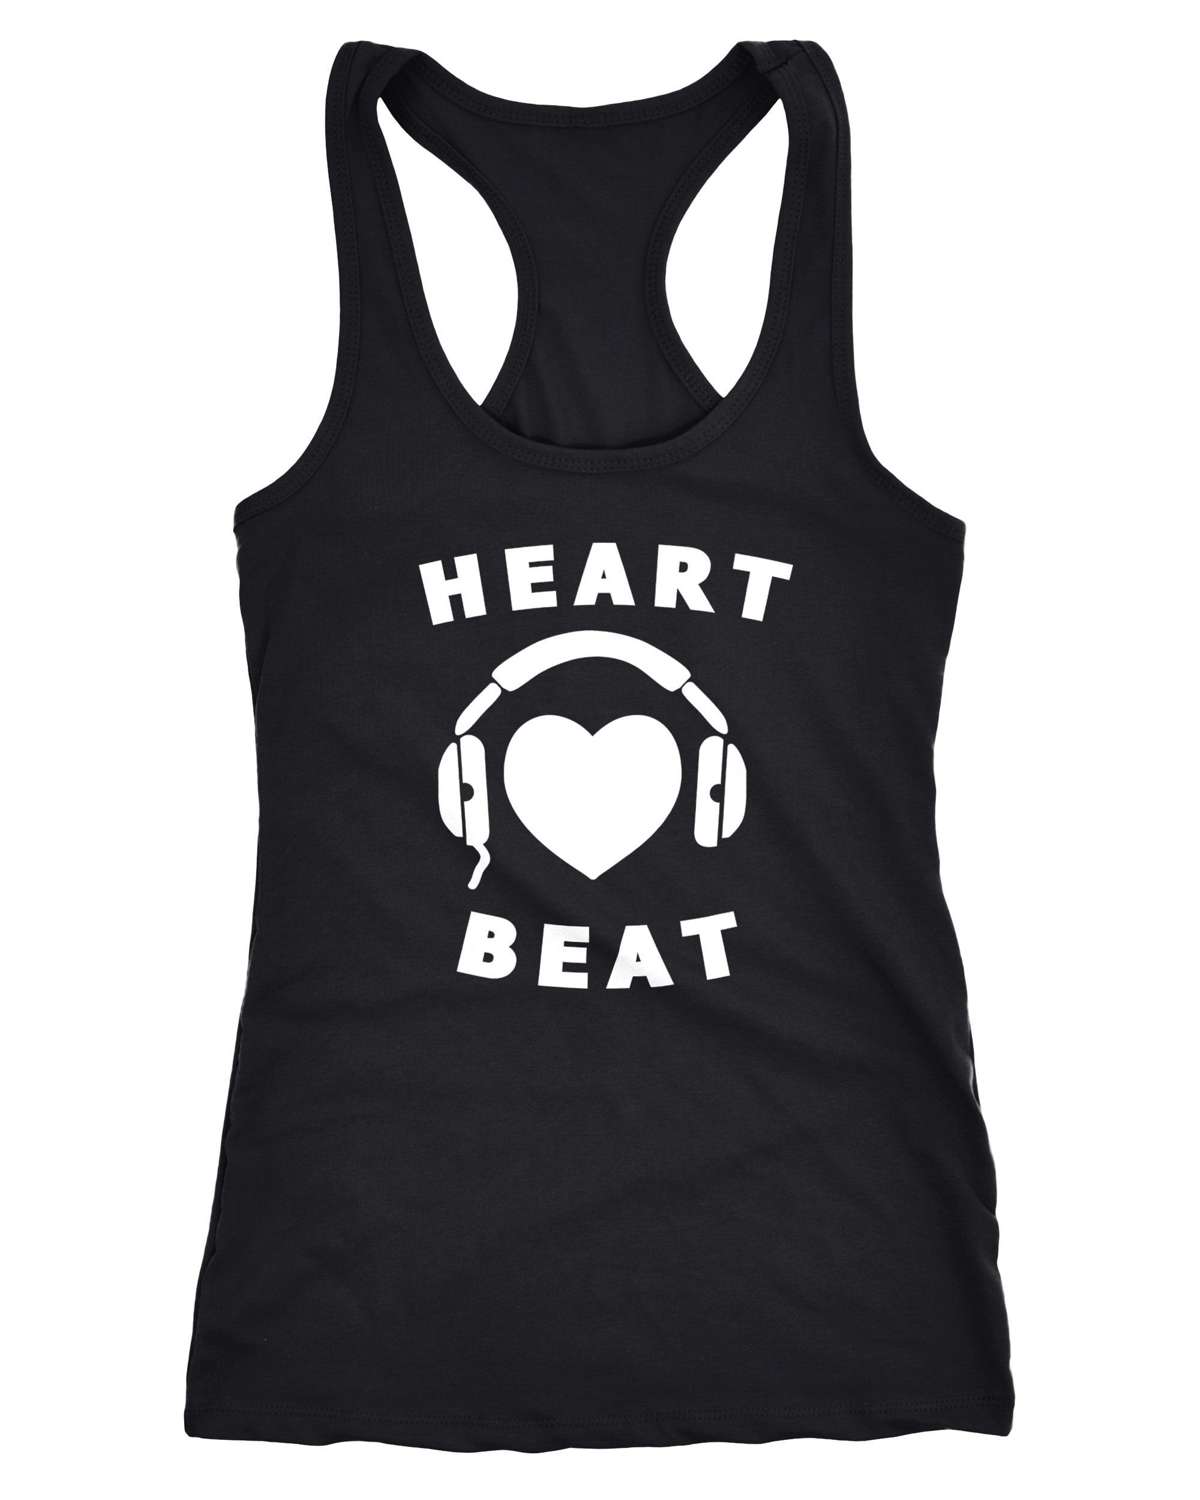 Майка женская майка Heart Beat Heart Наушники Музыкальные наушники Heart Racerback ®